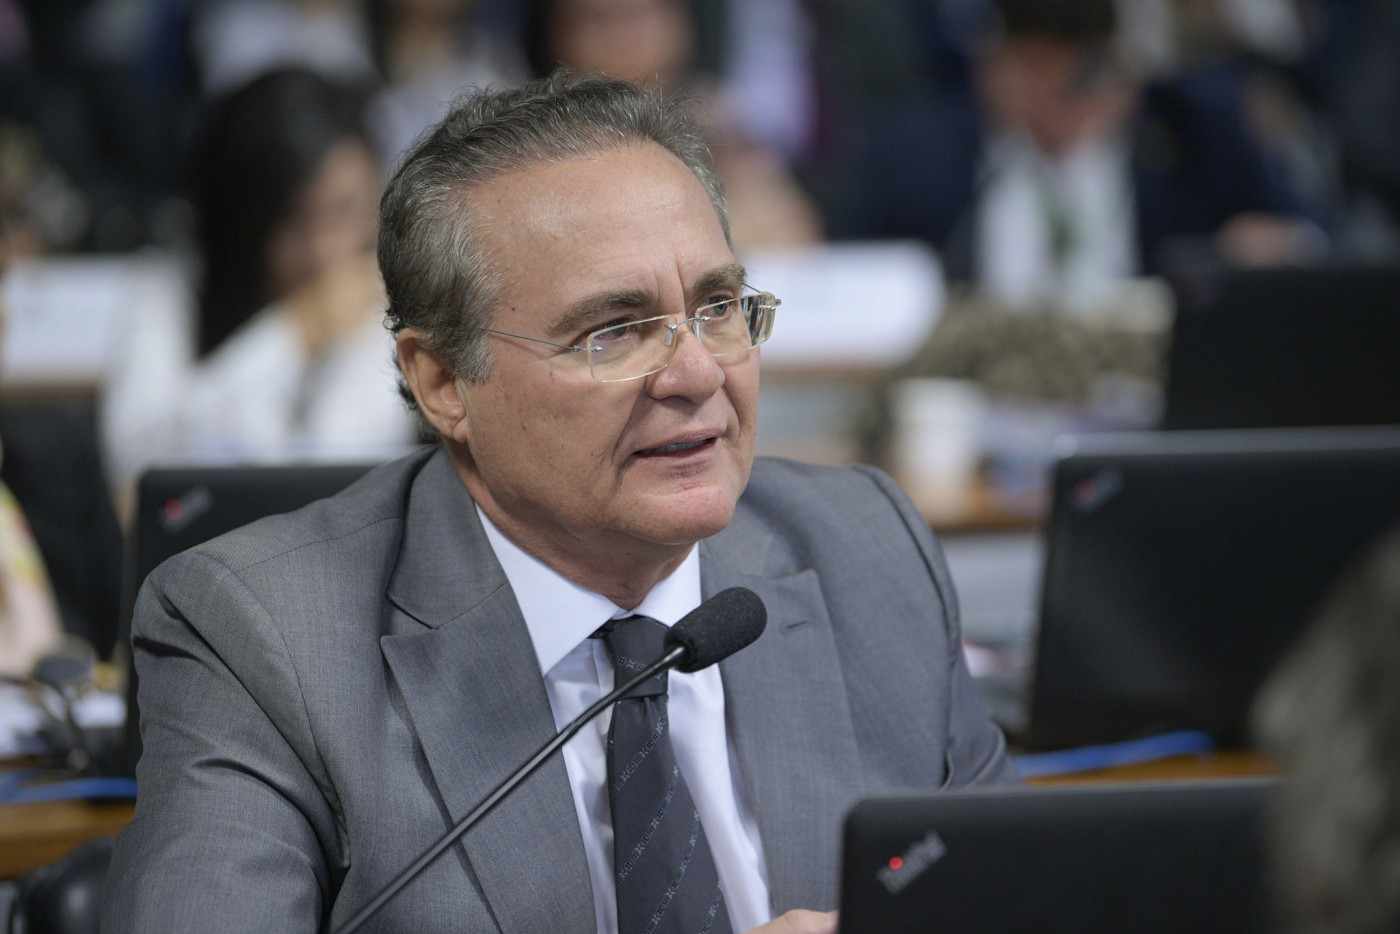 Renan Calheiros, Homem de óculos discursa em sessão do Senado